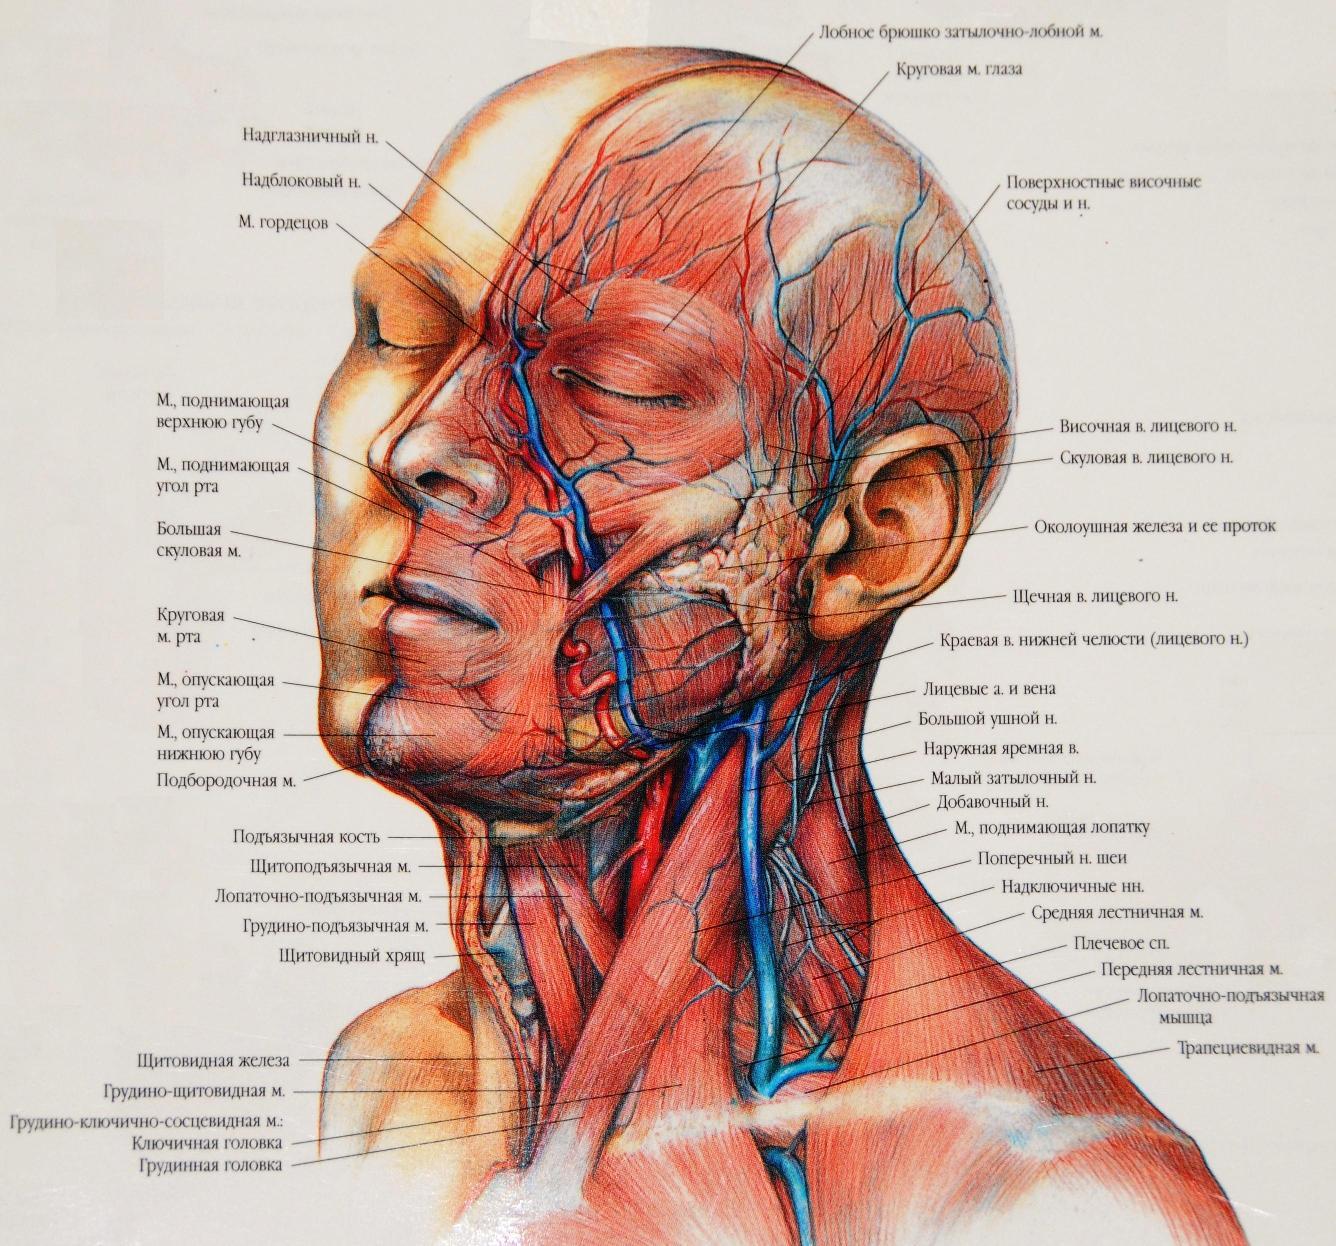 Анатомия сосудов головы. Мышцы головы и шеи анатомия затылок. Мышцы лица топографическая анатомия. Мышцы шеи топографическая анатомия. Сосуды головы топографическая анатомия.